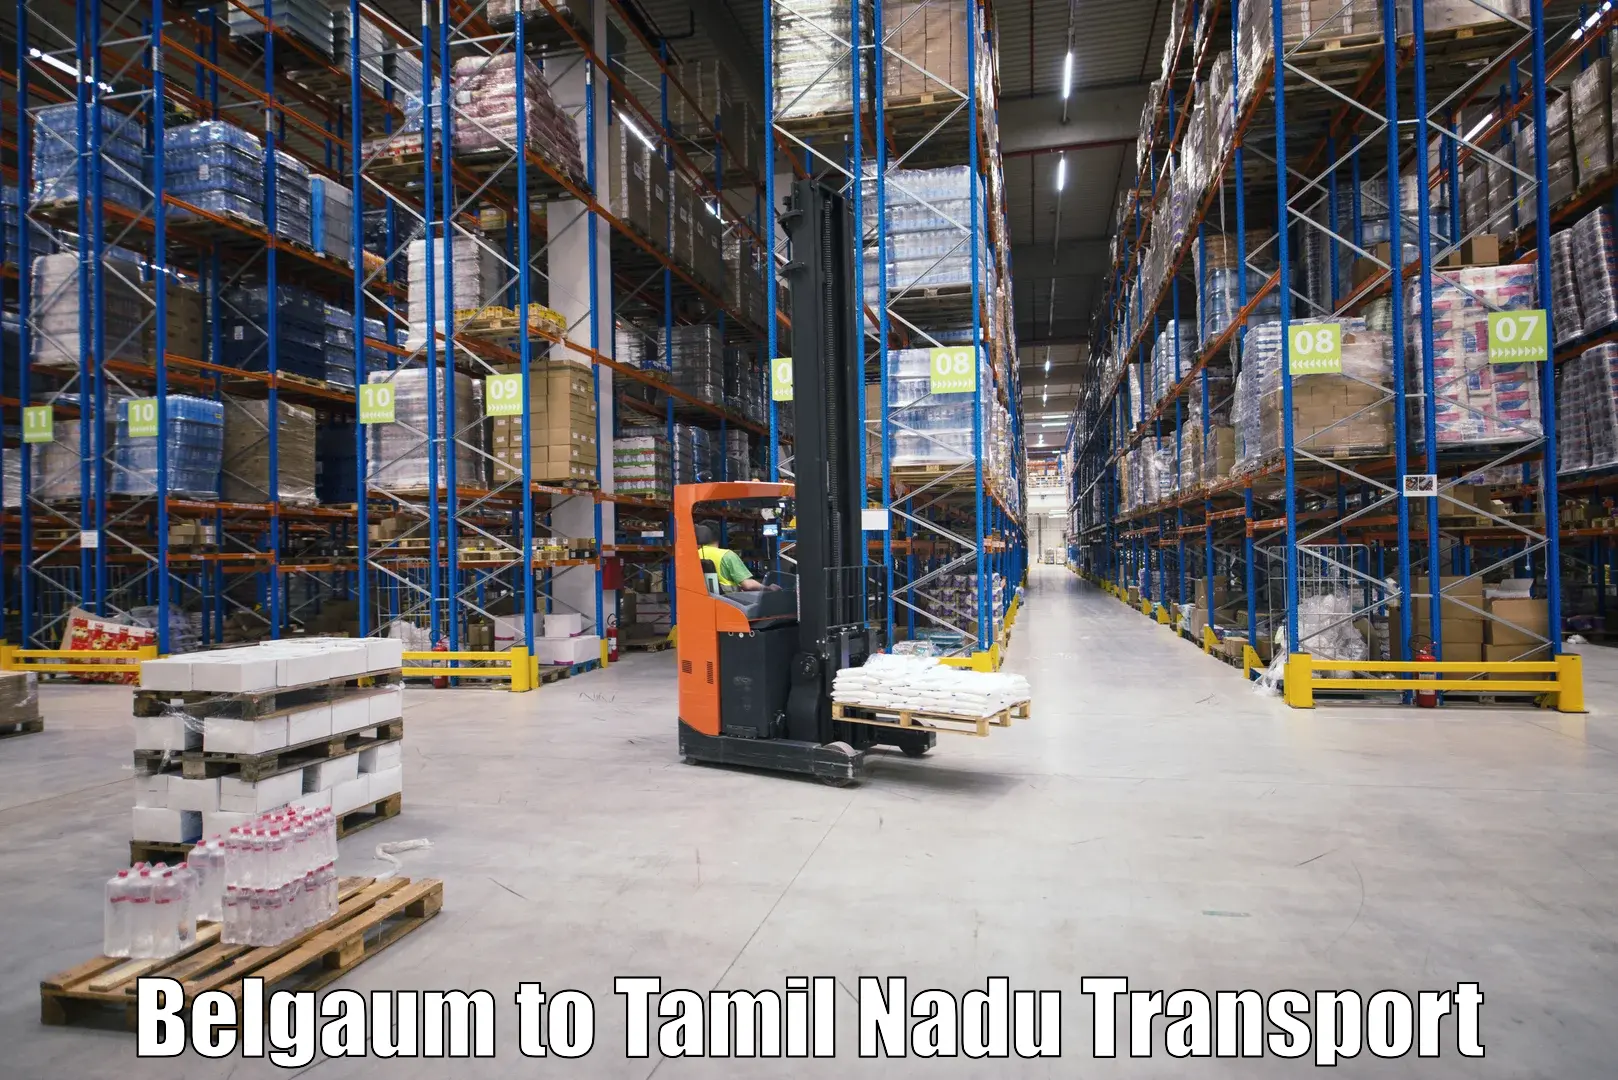 Delivery service Belgaum to Thiruvadanai